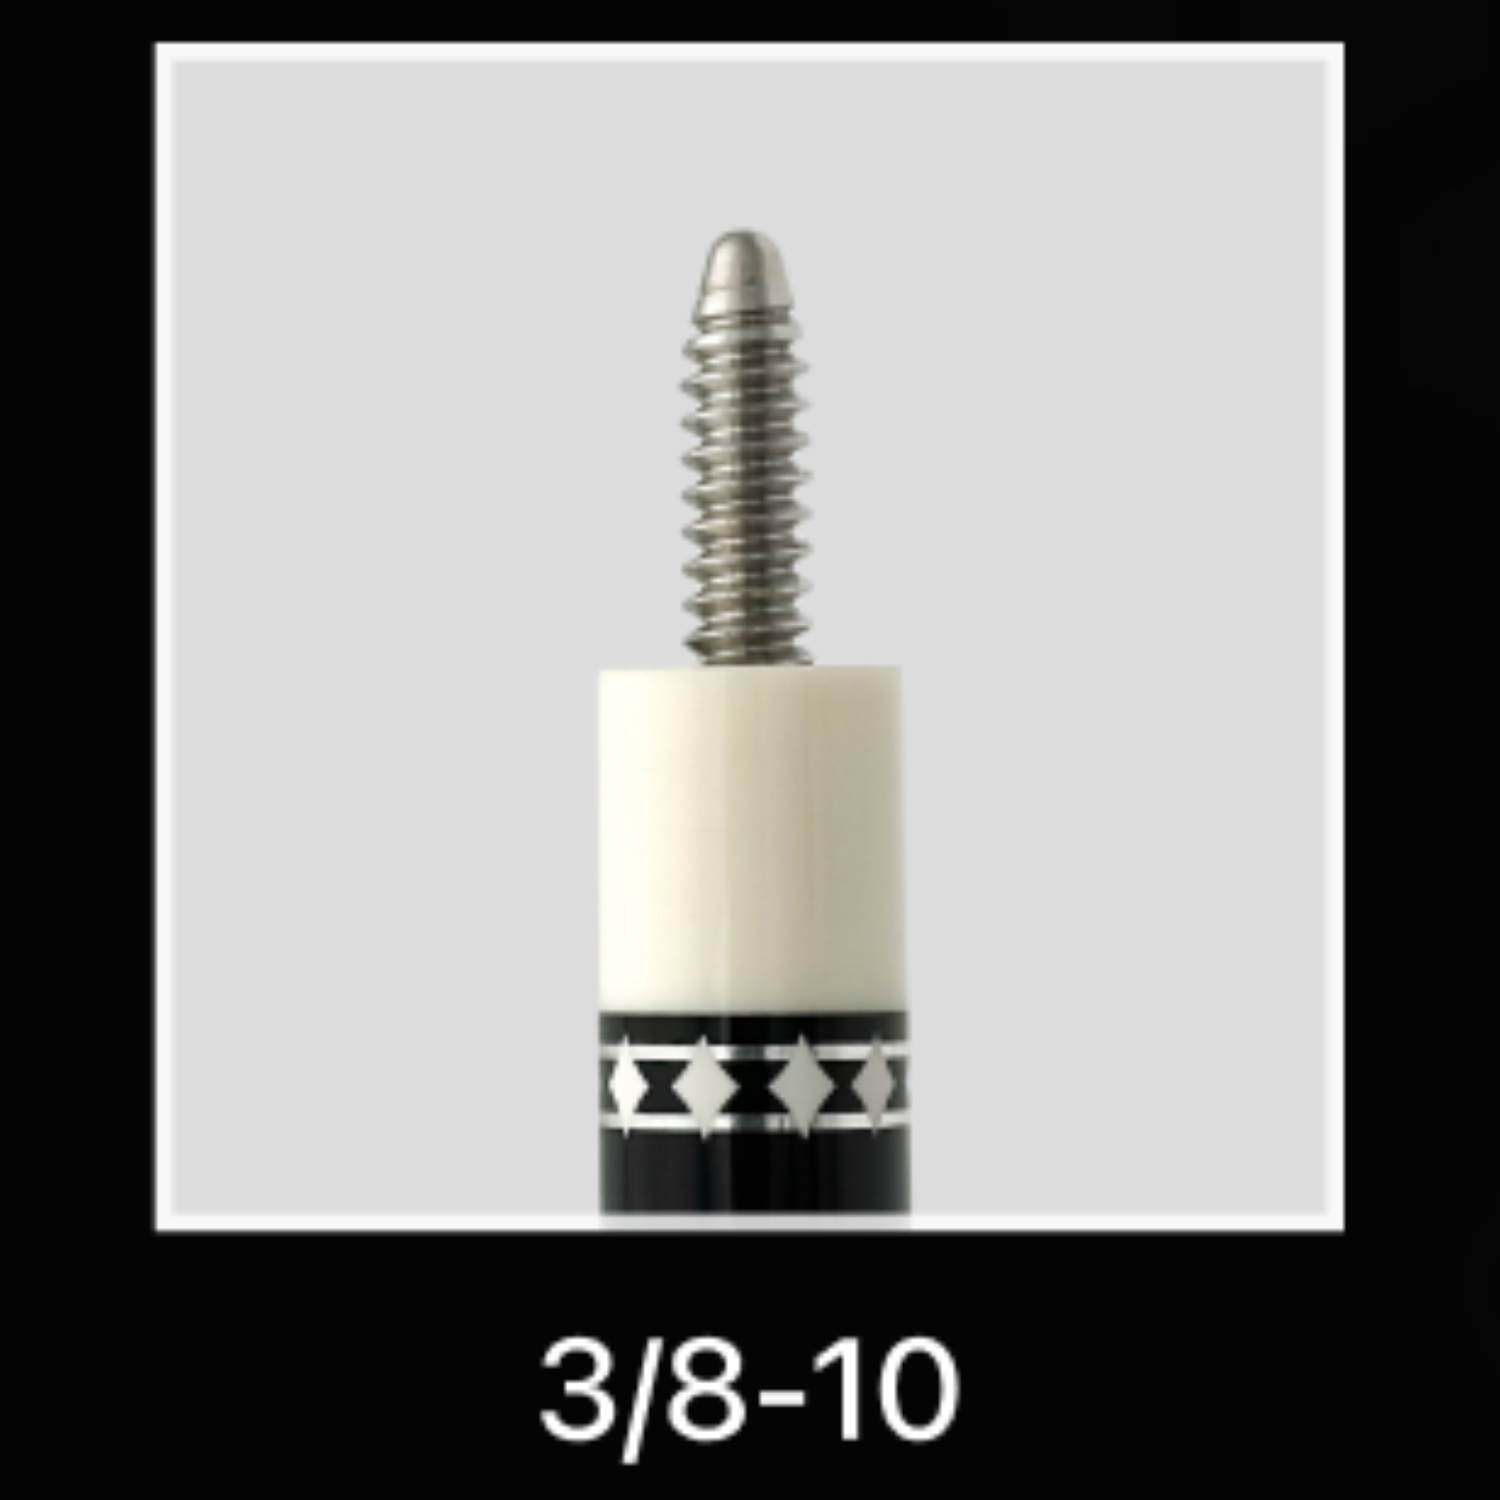 Rhino - 710mm (28'') / 3/8-10 Carbon Carom Single Shaft 12mm